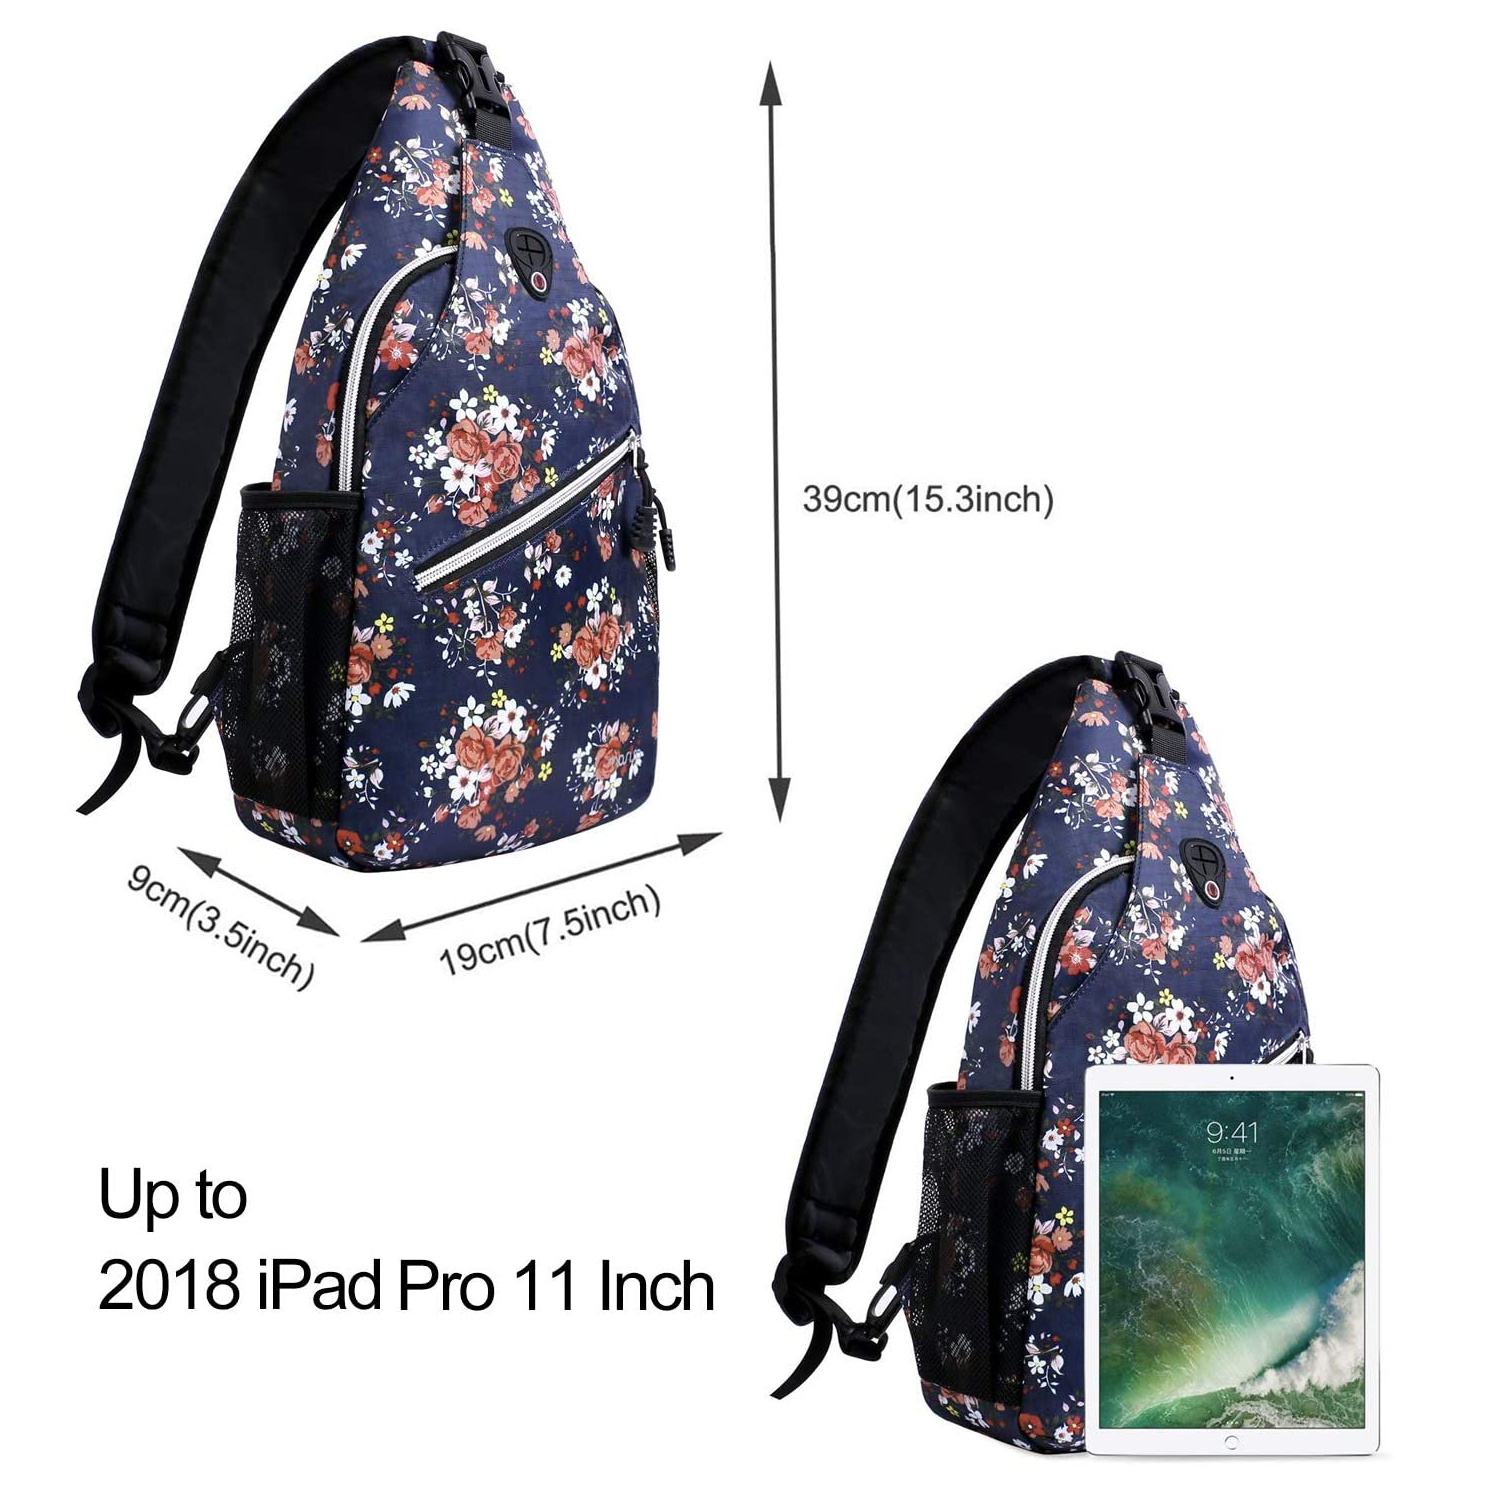 Mosiso Polyester Sling Bag Backpack Travel Hiking Outdoor Sport Crossbody Shoulder Bag Multipurpose Daypack for Women Men, Navy Blue Base Floral - image 3 of 6